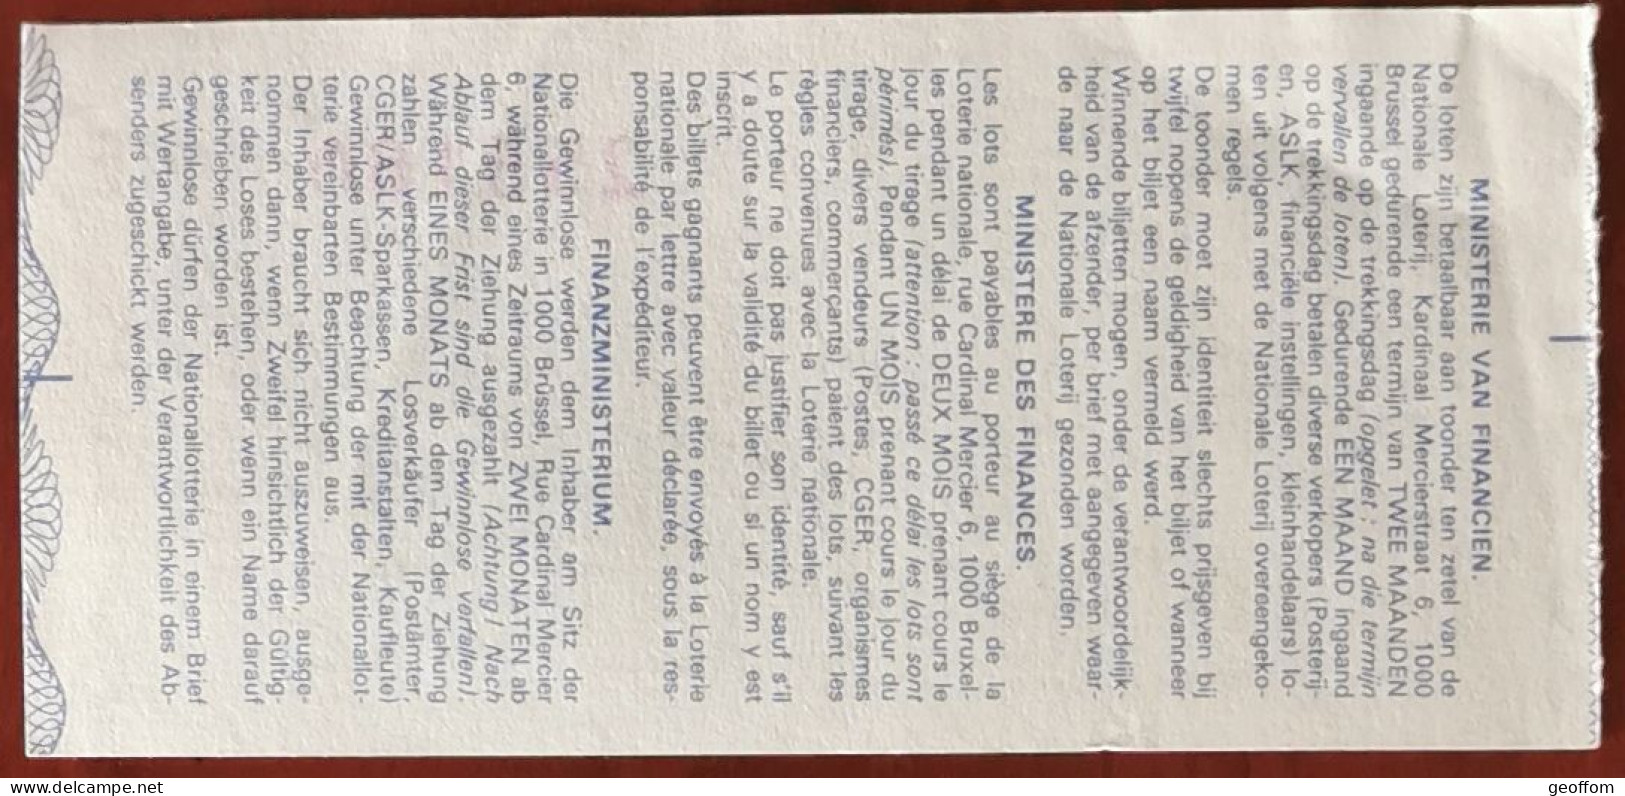 Billet De Loterie Nationale Belgique 1989 28e Tranche Du Canotage - 12-7-1989 - Biglietti Della Lotteria